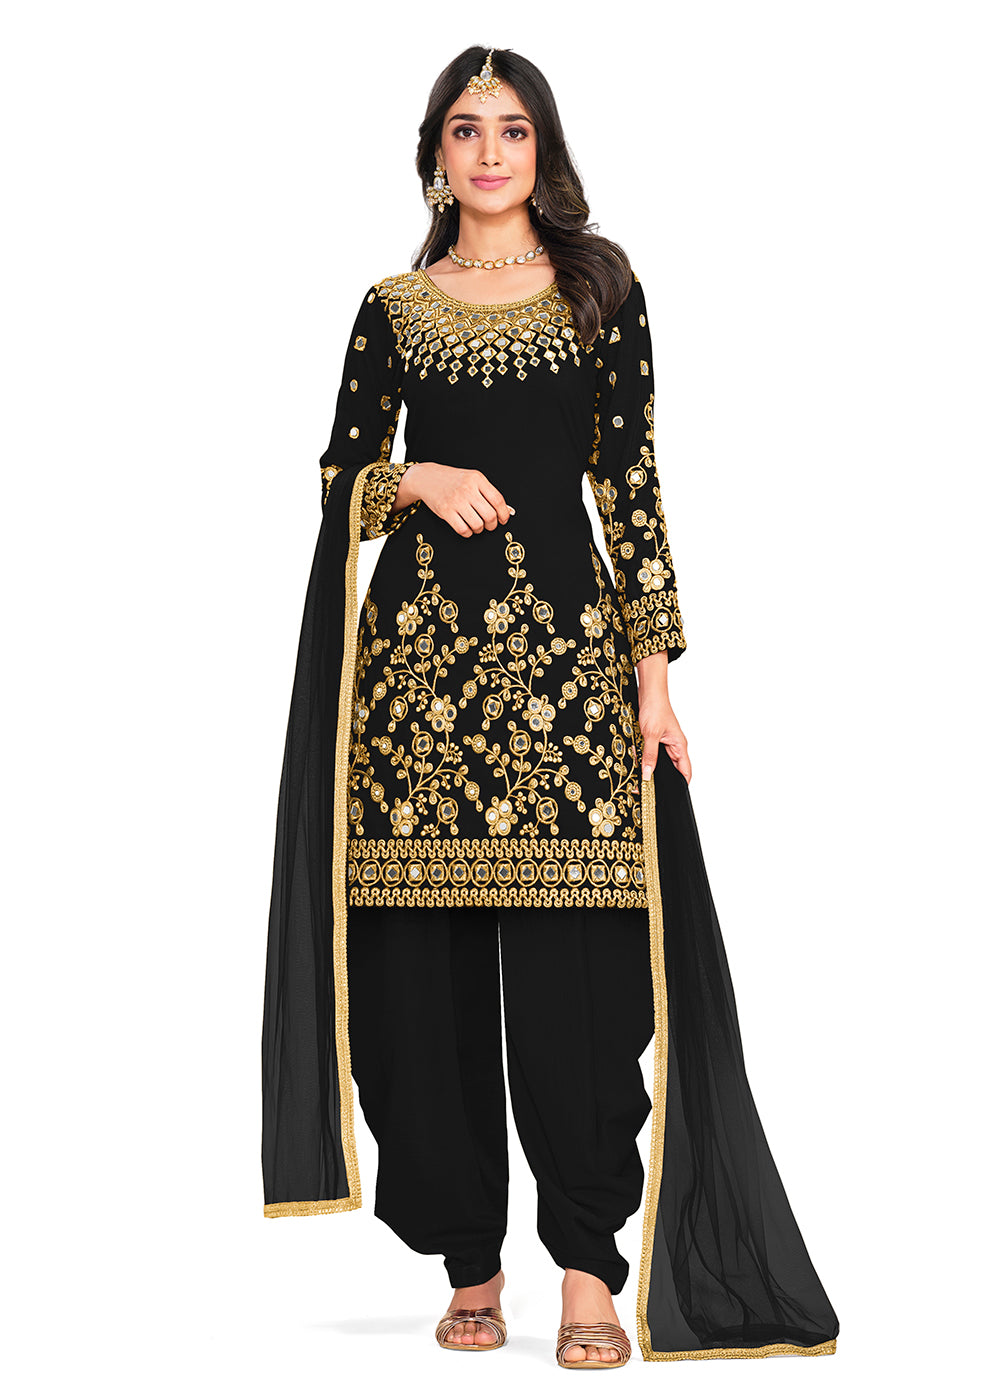 Lace Punjabi Suits: Buy Latest Lace Work Punjabi Suits Online